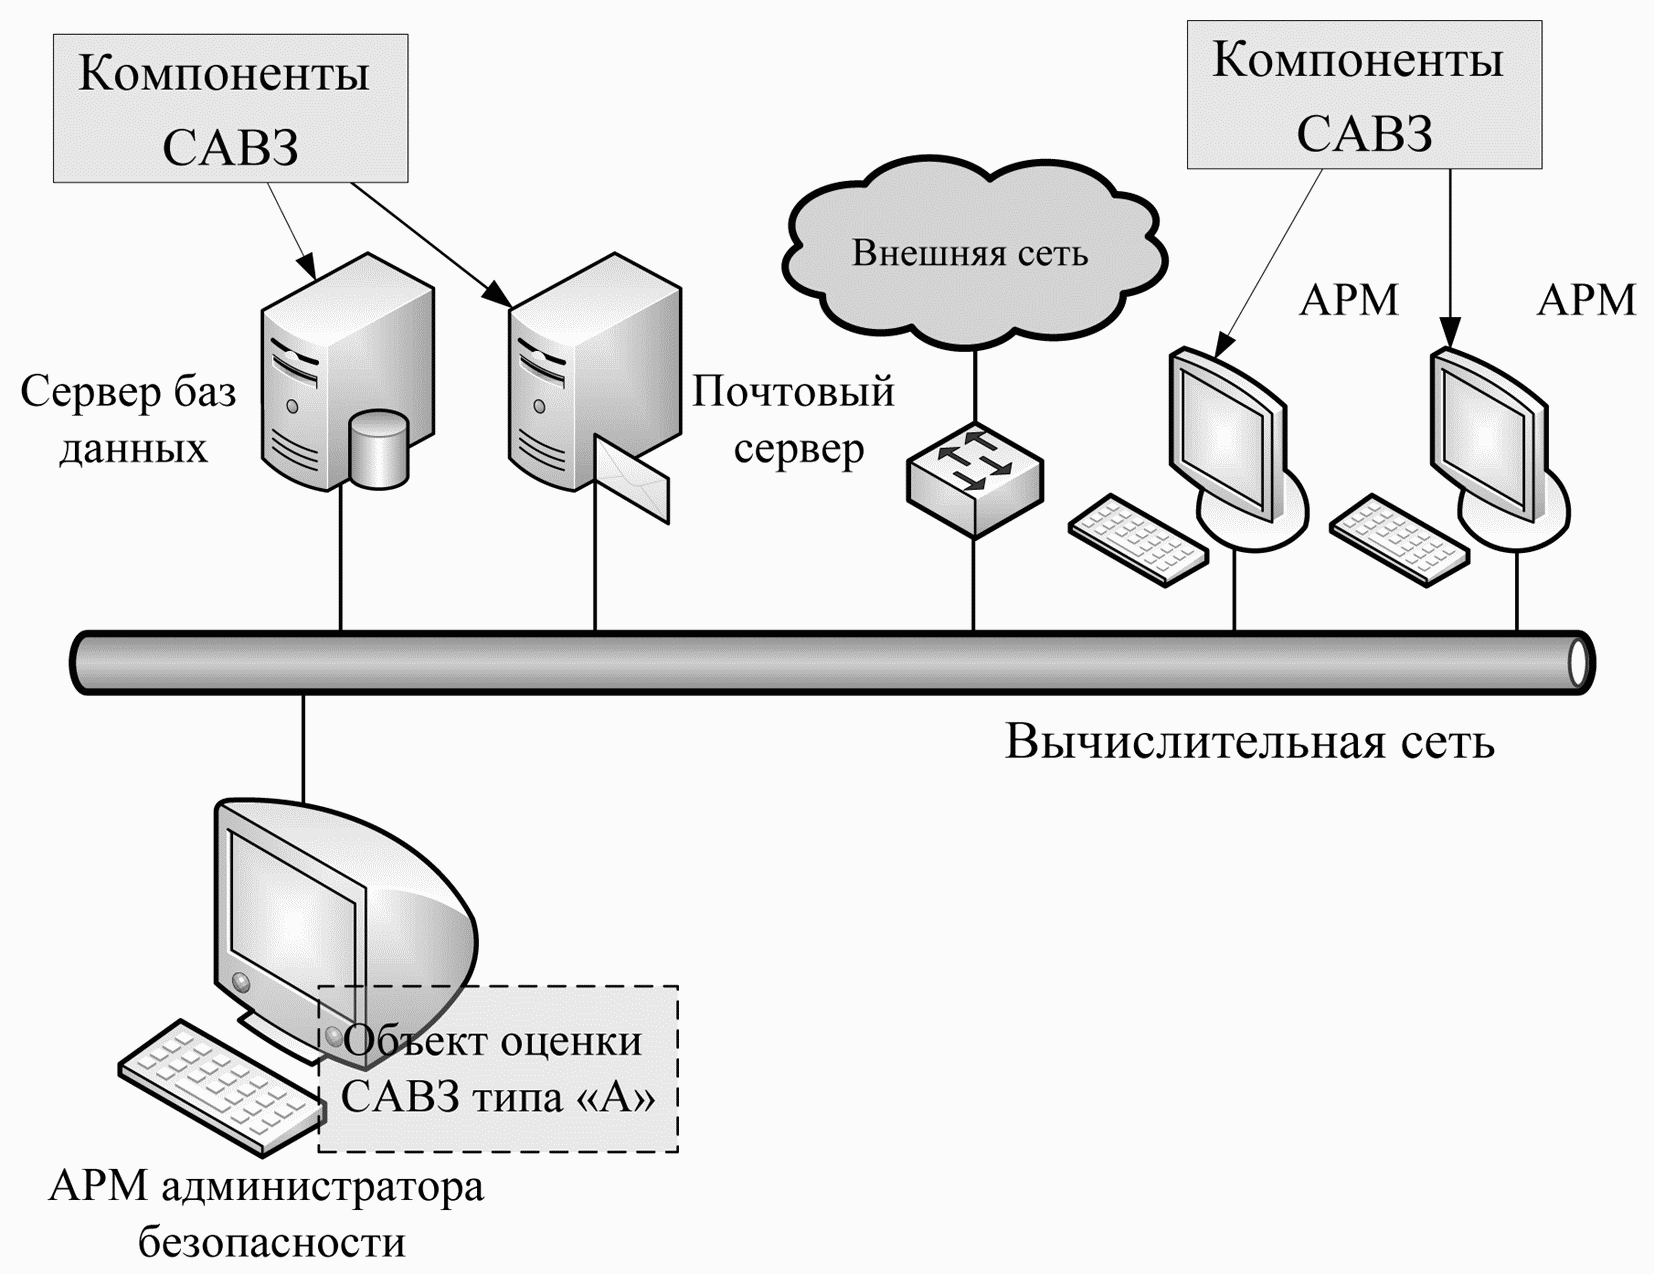 Информационная система арм. Схема АРМ. Администрирование баз данных и серверов схемы. АРМ И сервера. АРМ администратора.